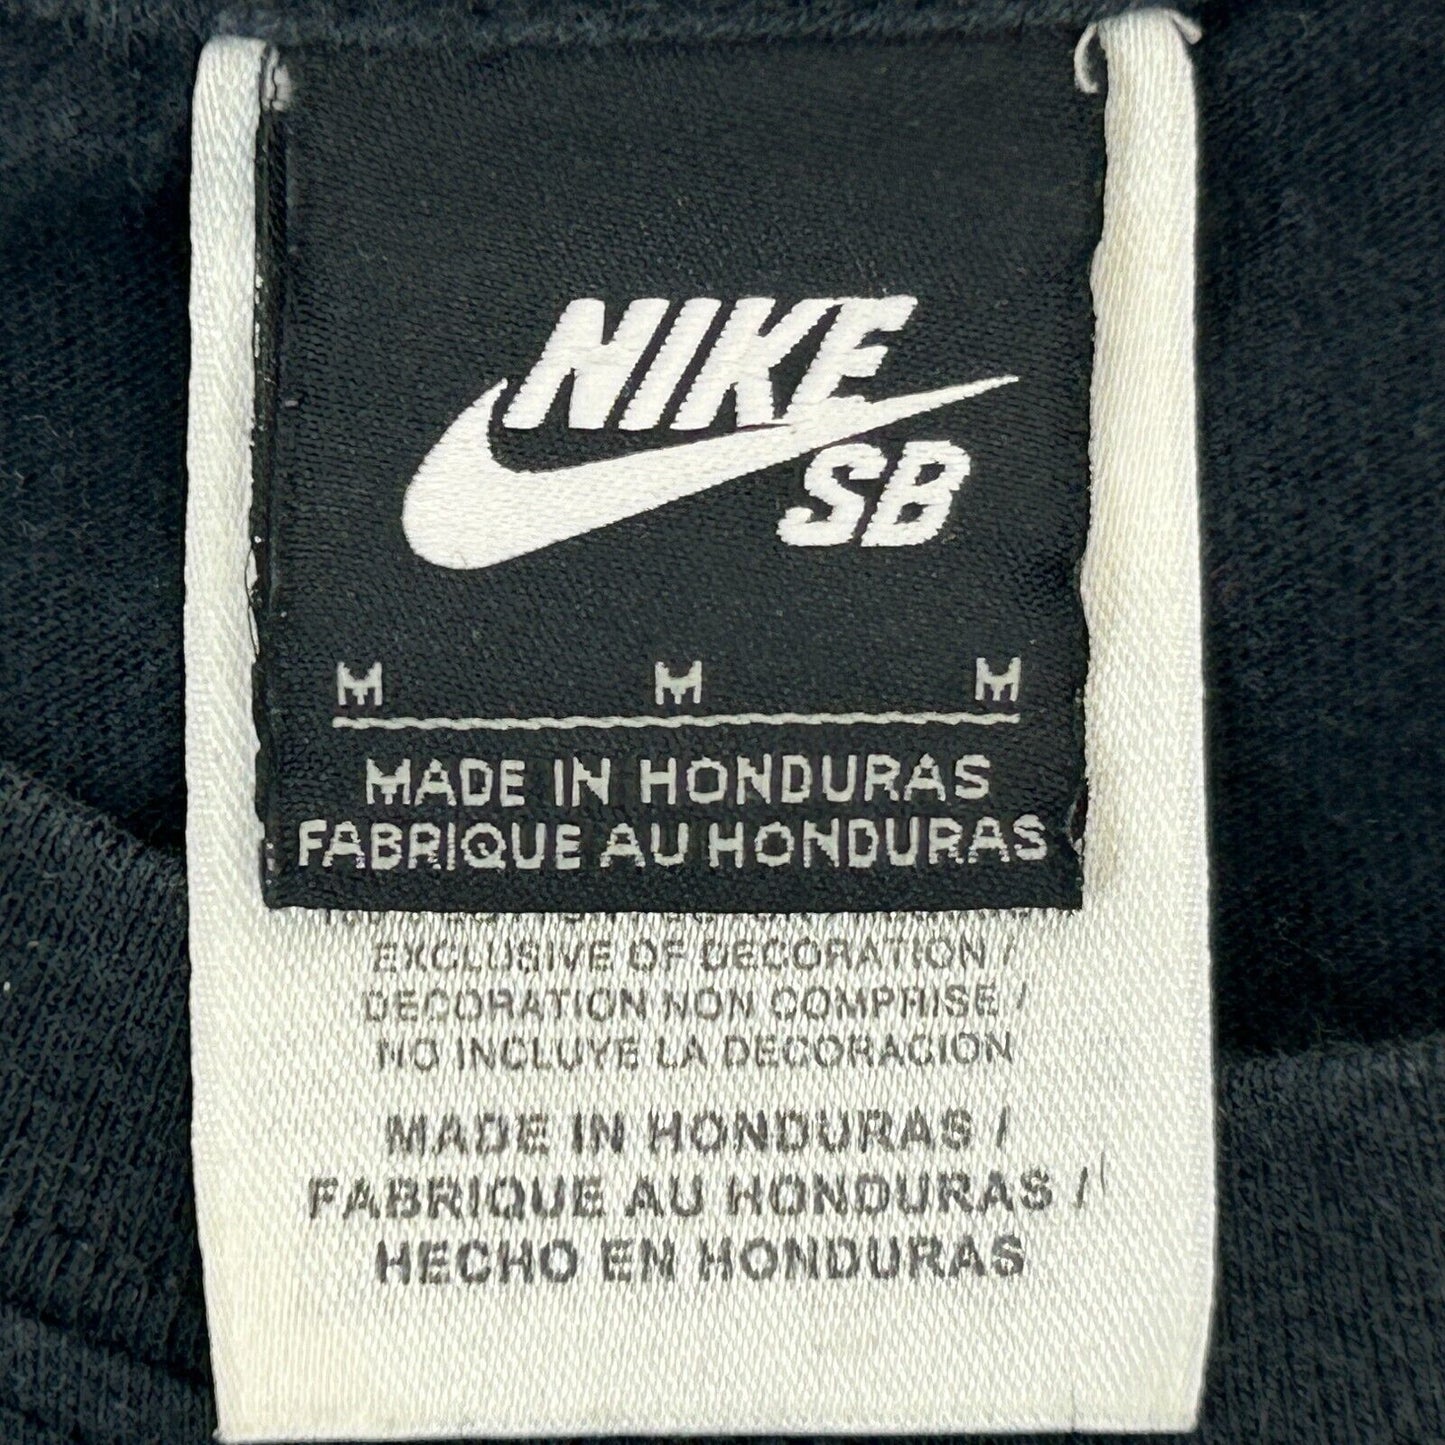 Nike SB Skateboarding Paul Rodriguez T Shirt Medium Skater Skating Mens Black